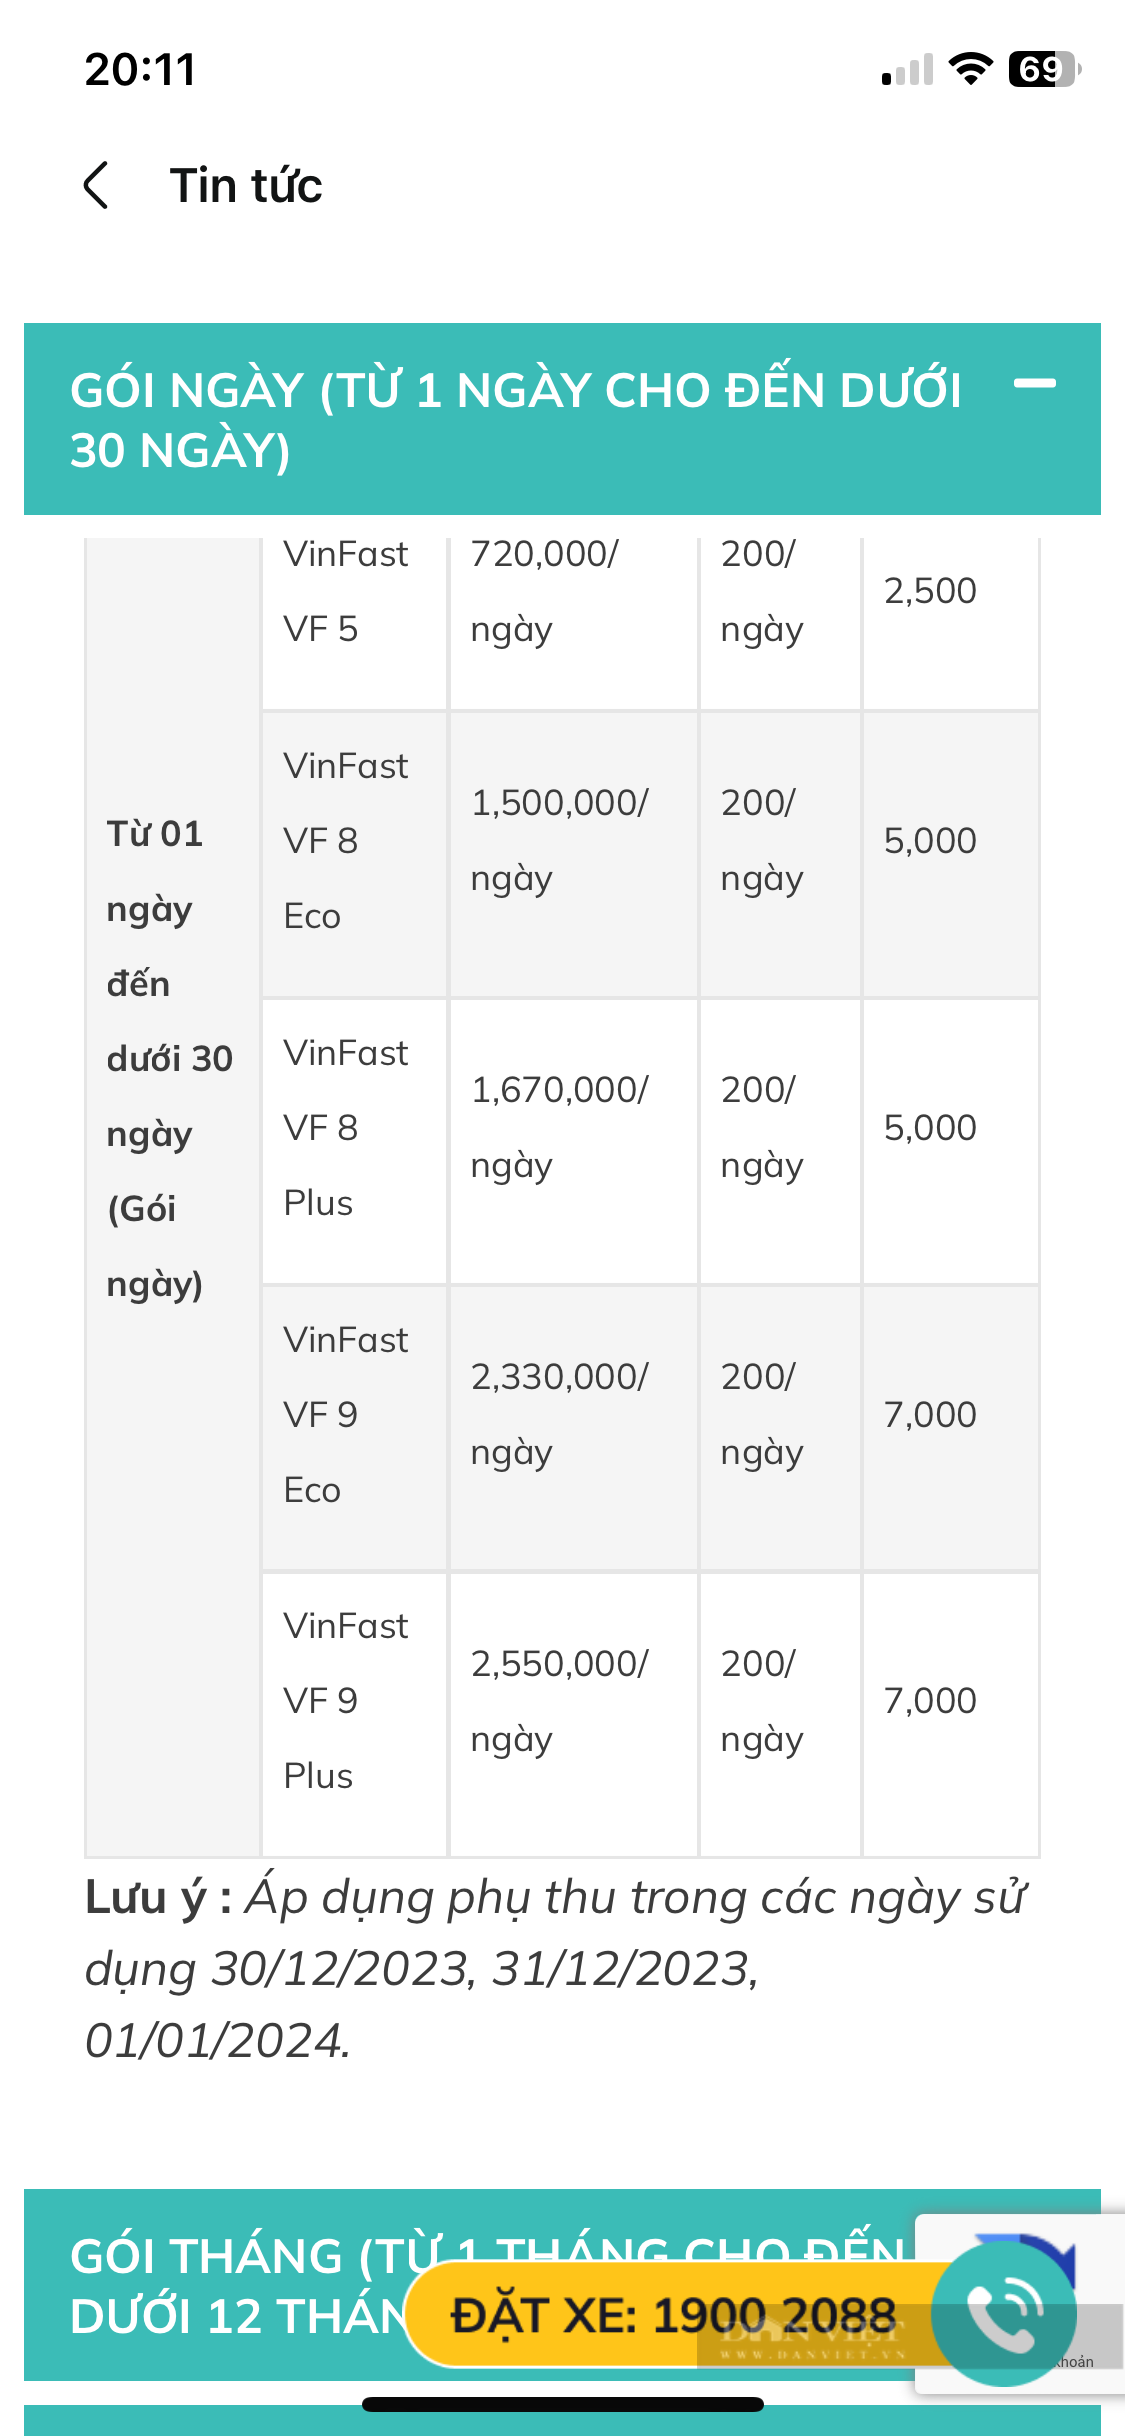 Bất ngờ giá thuê xe điện VinFast tự lái: Có gói thuê tháng và Tết Nguyên đán cho người dùng lựa chọn- Ảnh 2.